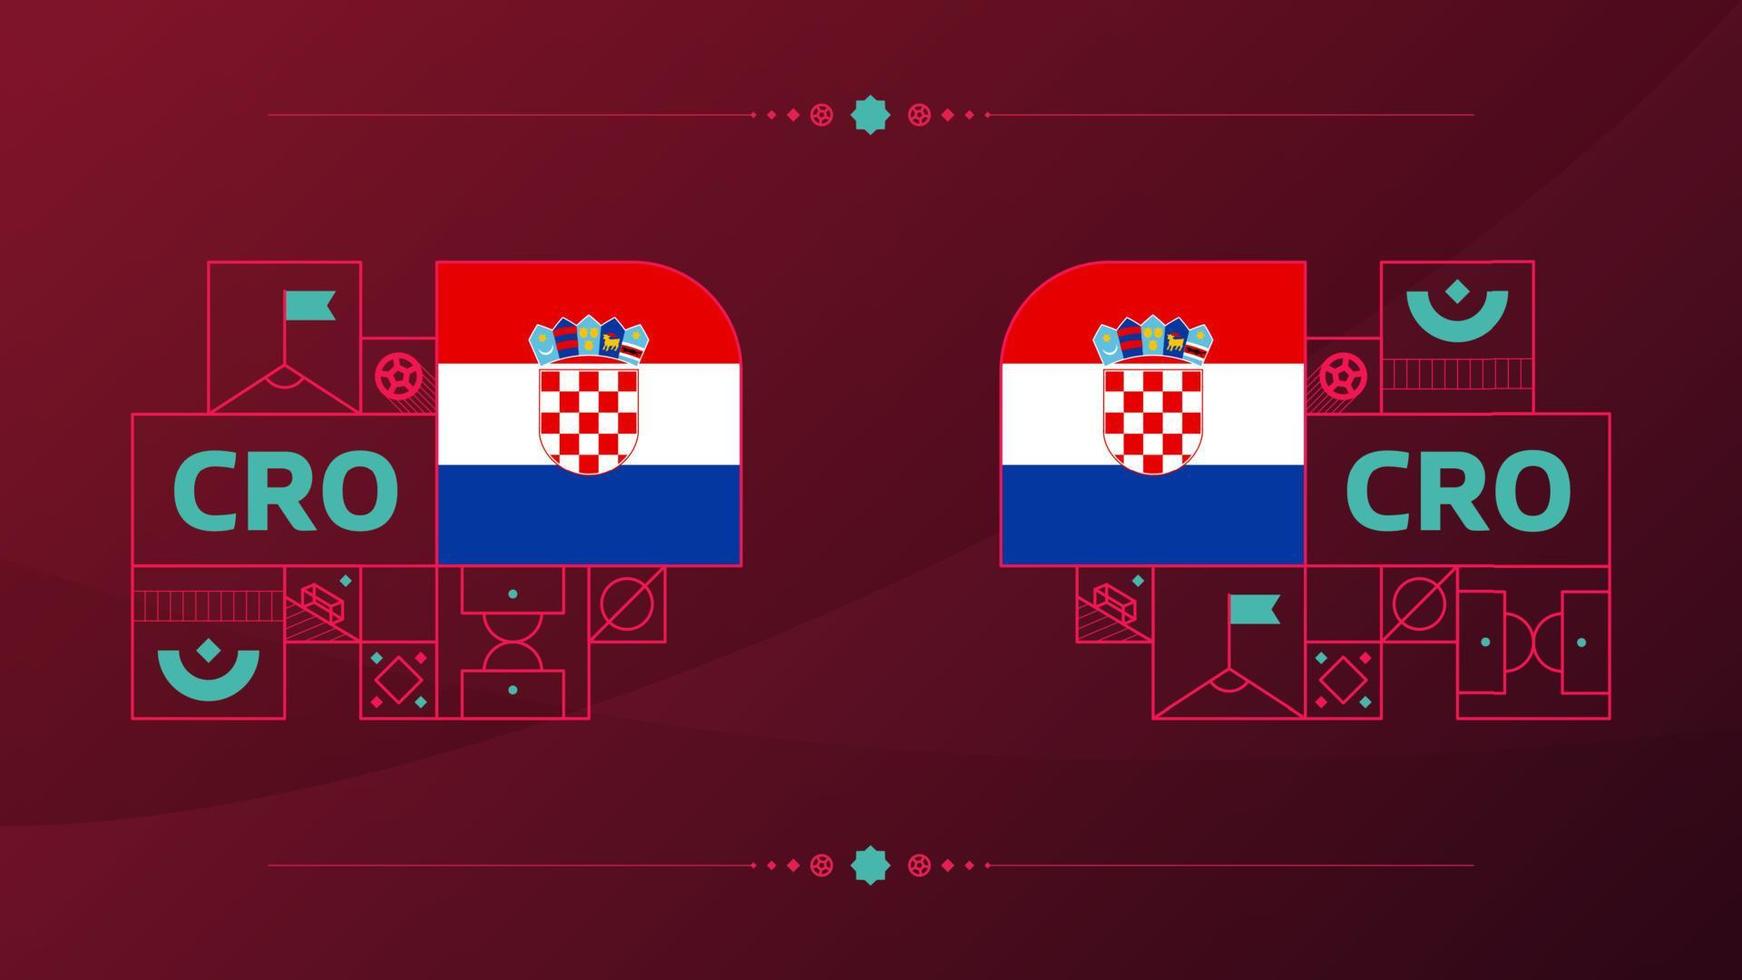 kroatische flagge für das fußballpokalturnier 2022. isolierte nationalmannschaftsflagge mit geometrischen elementen für 2022 fußball- oder fußballvektorillustration vektor